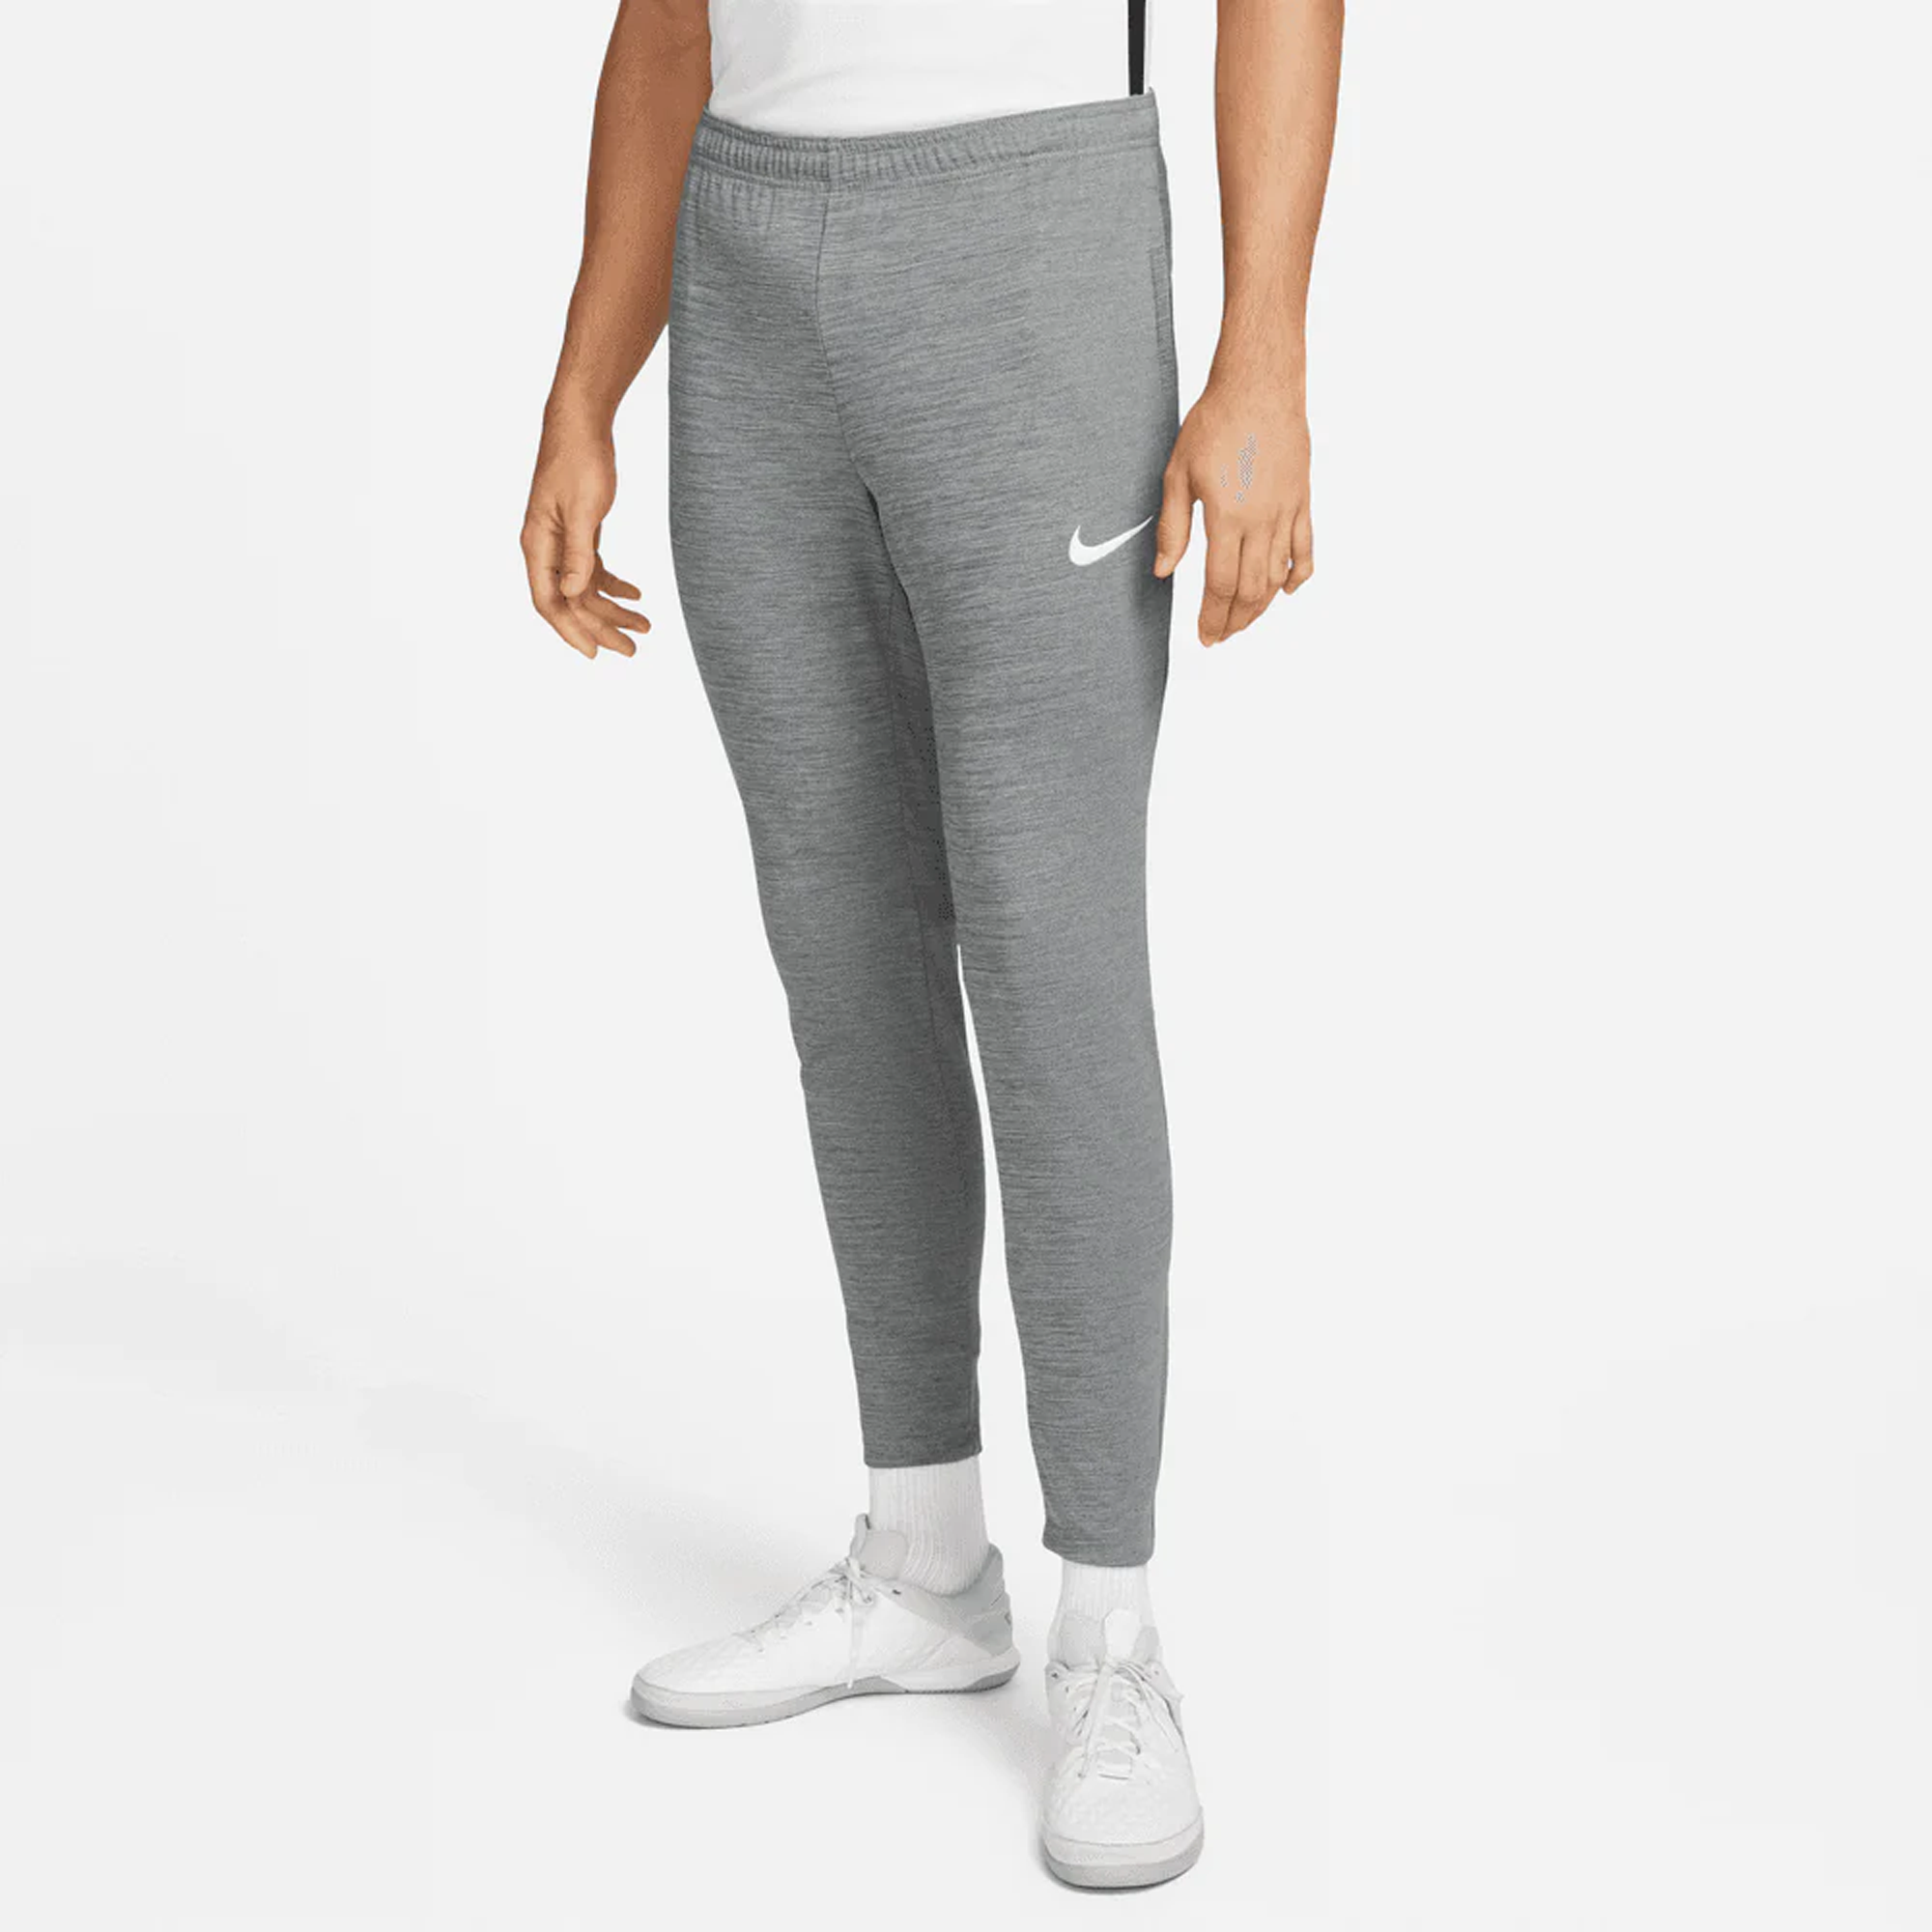 Nike Men's Dri-FIT Academy Pro Soccer Pants - Grey / White